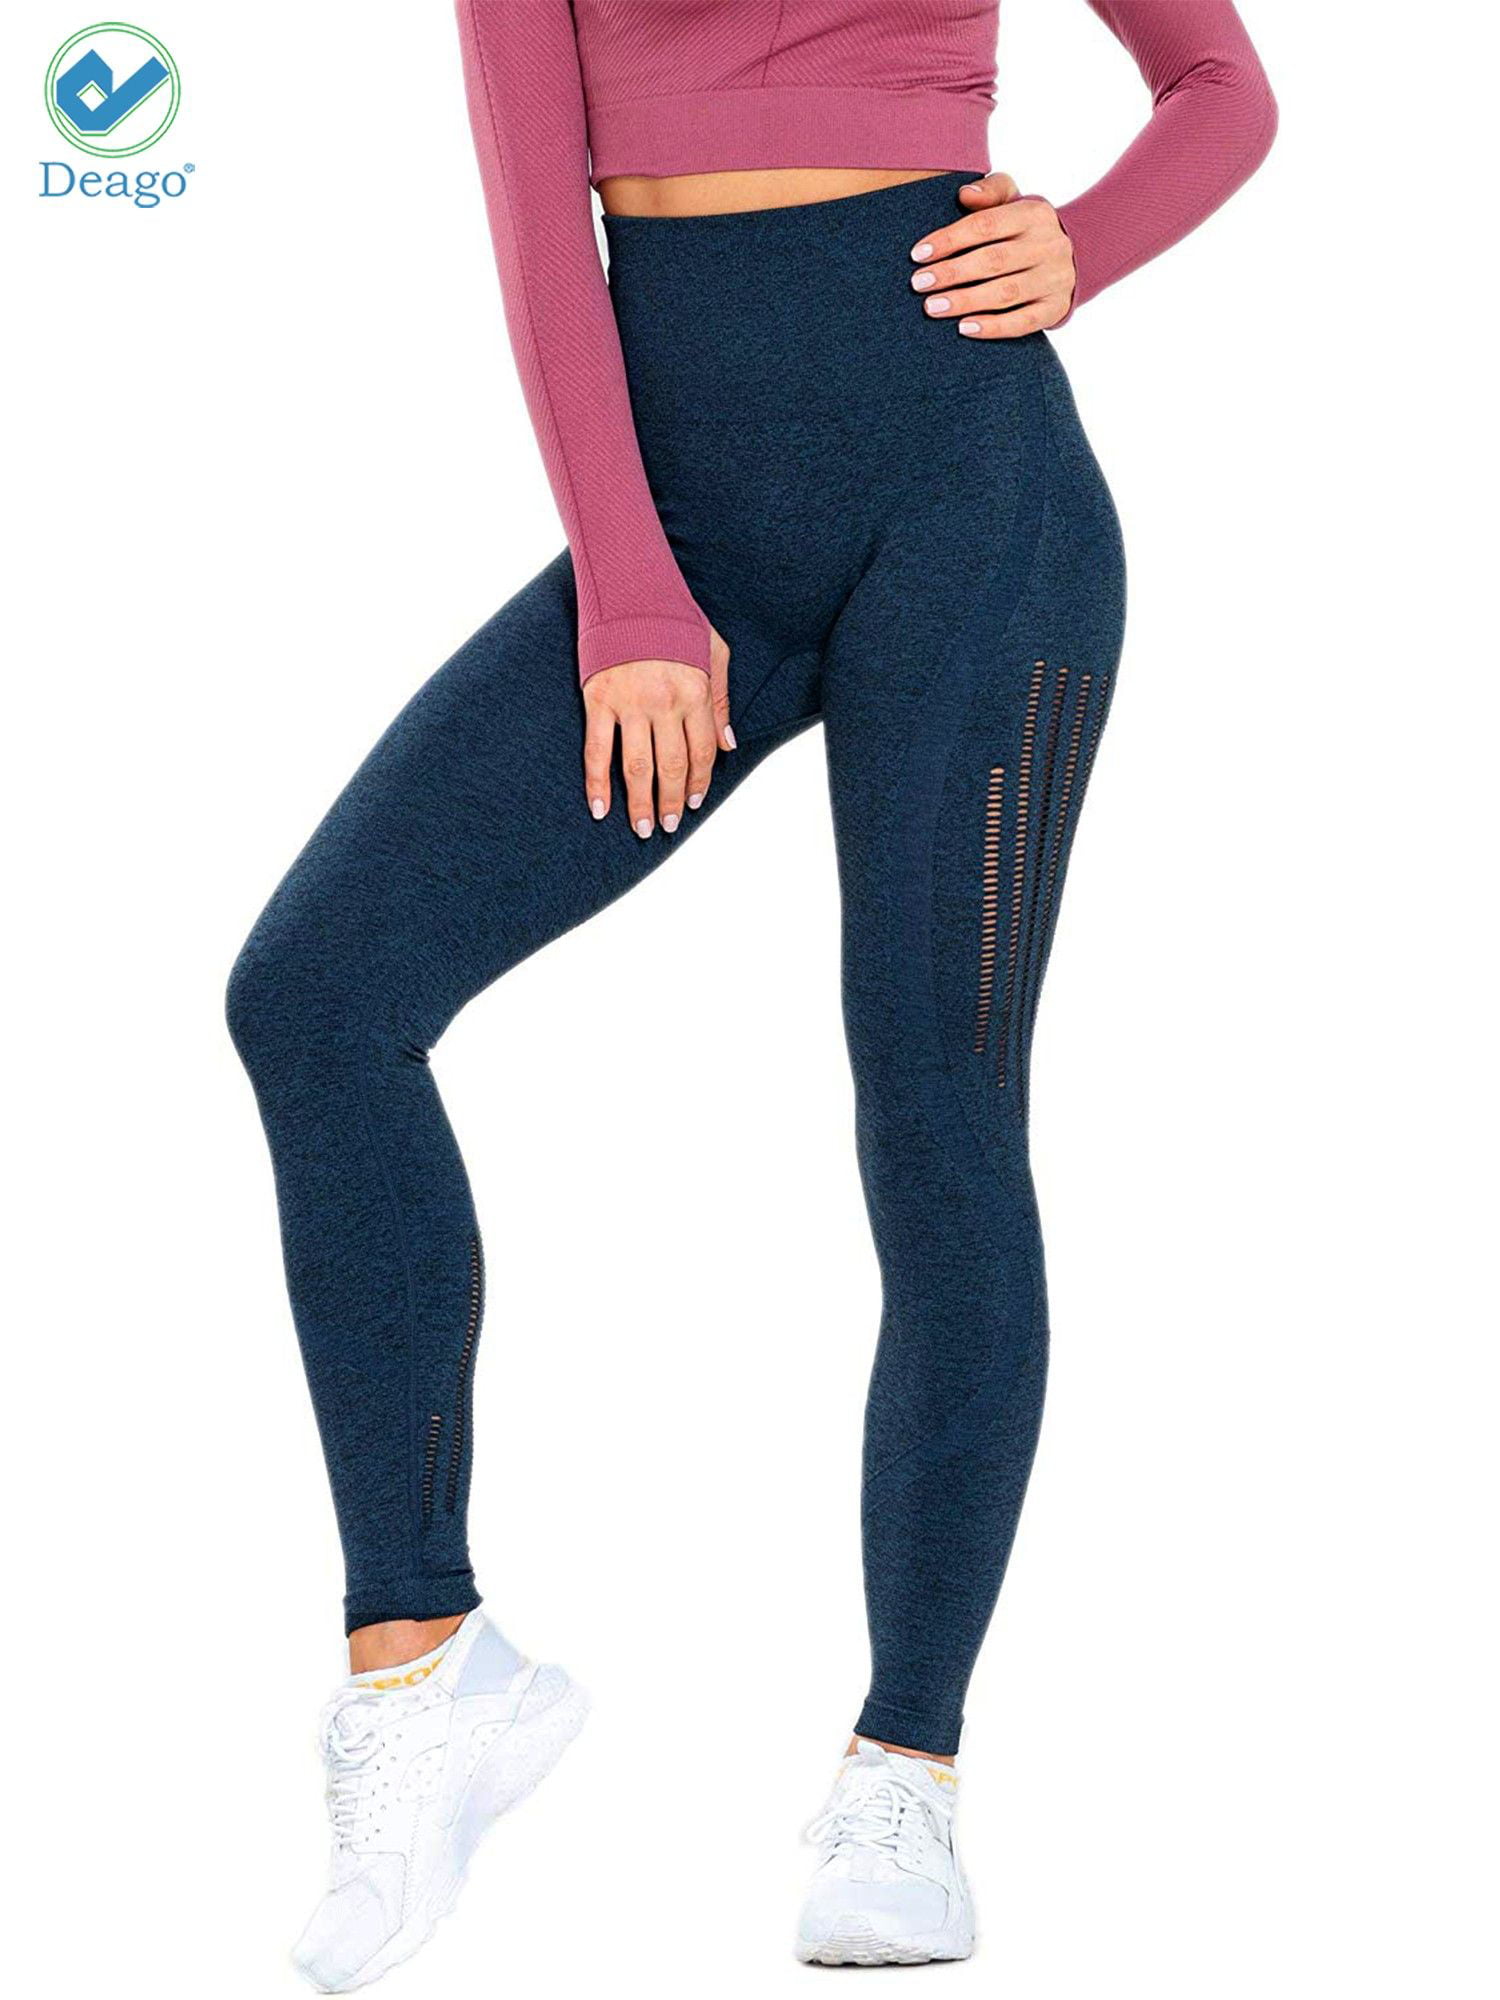 yoga pants seamless stretchy gym wear sport women running tummy control